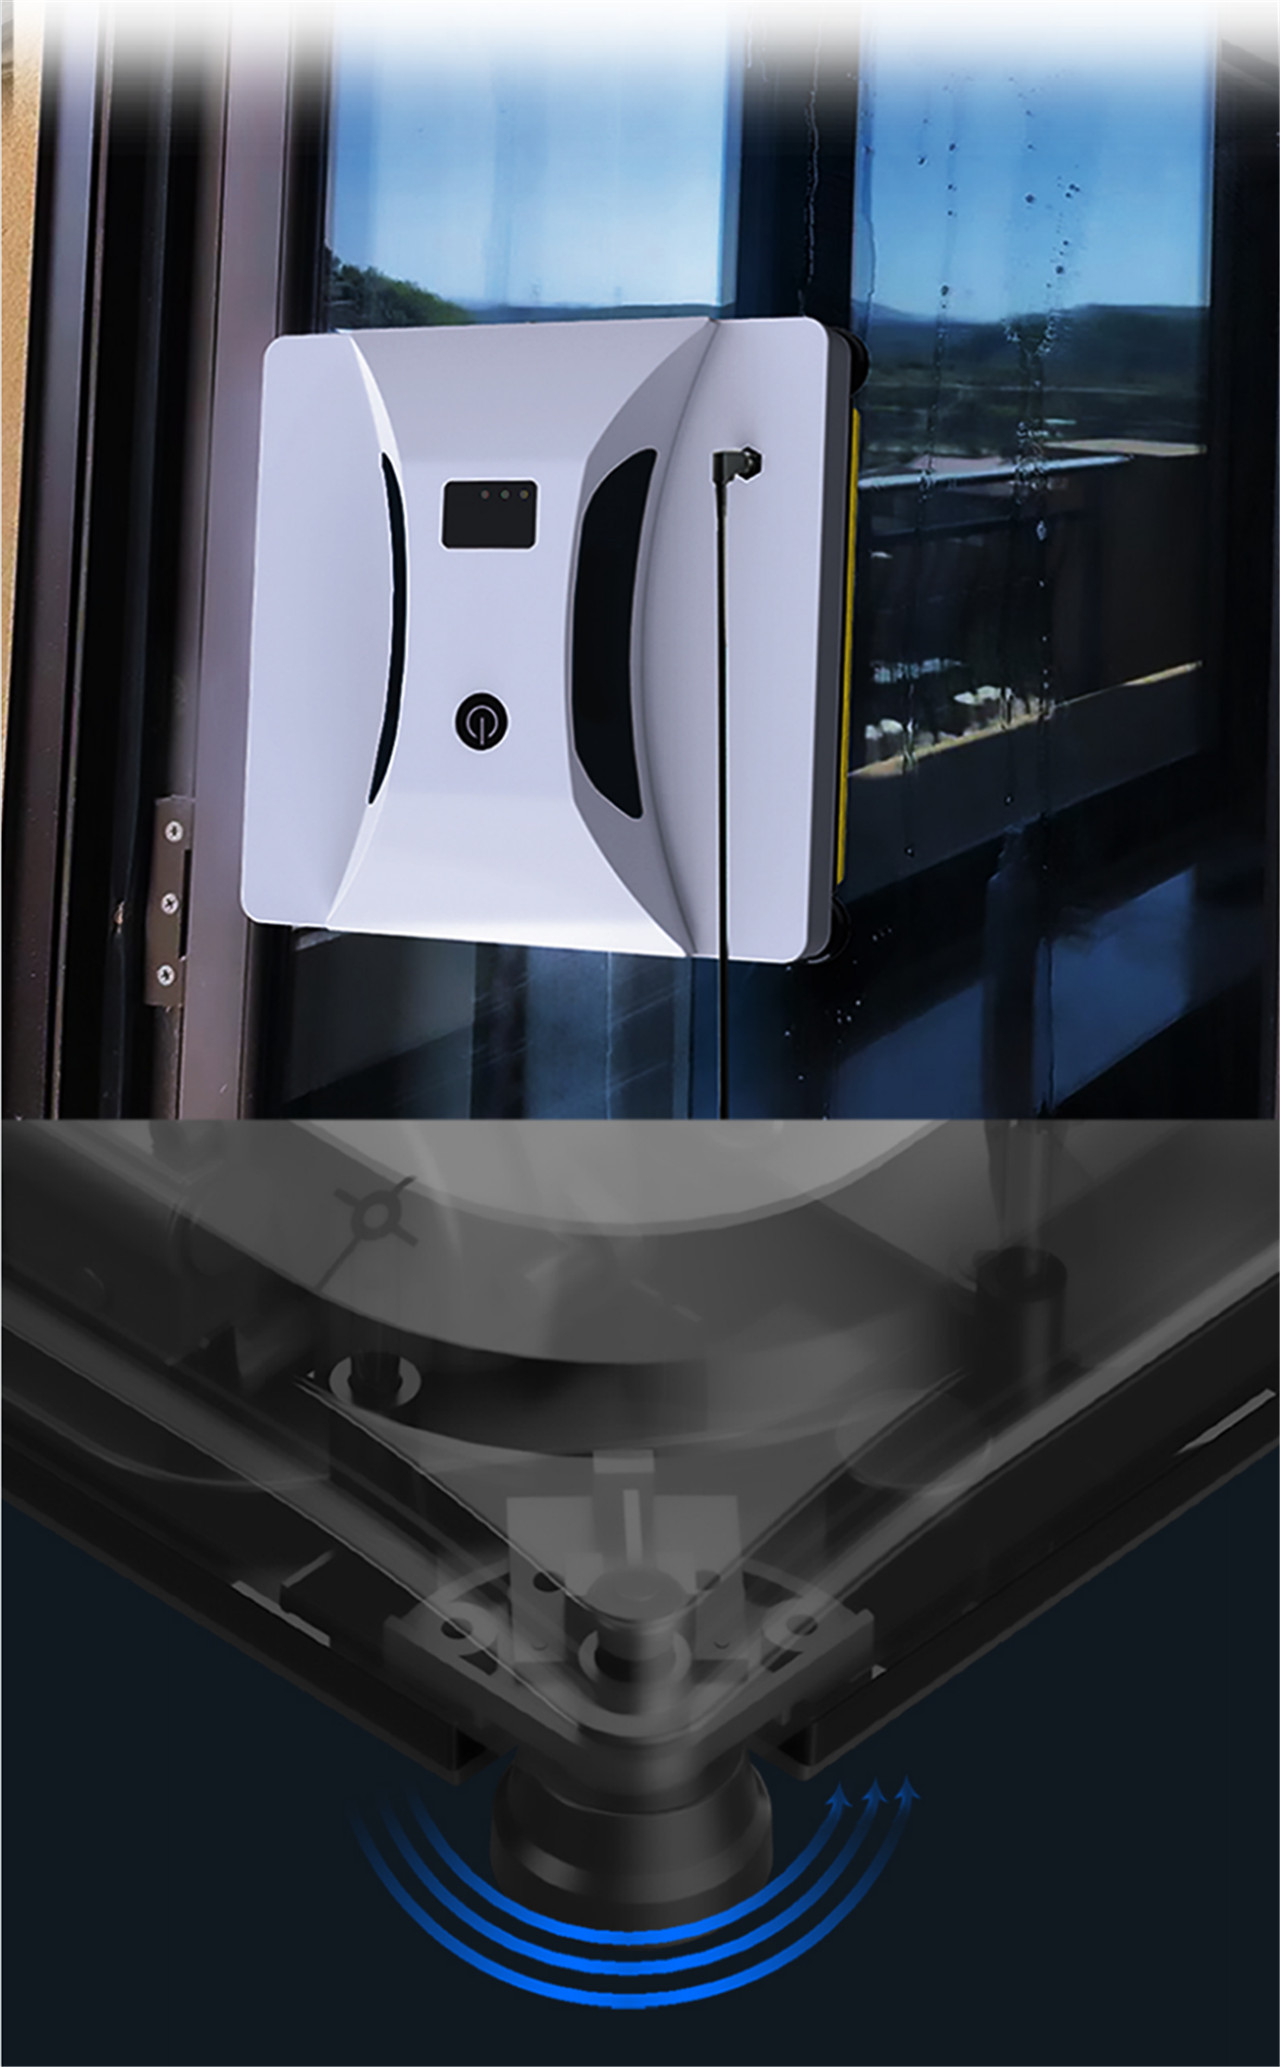 Panavox HCR-05 Smart Window Cleaner Robot Intelligent Automatisk rengøringsrobot til indendørs og udendørs vinduer (5)